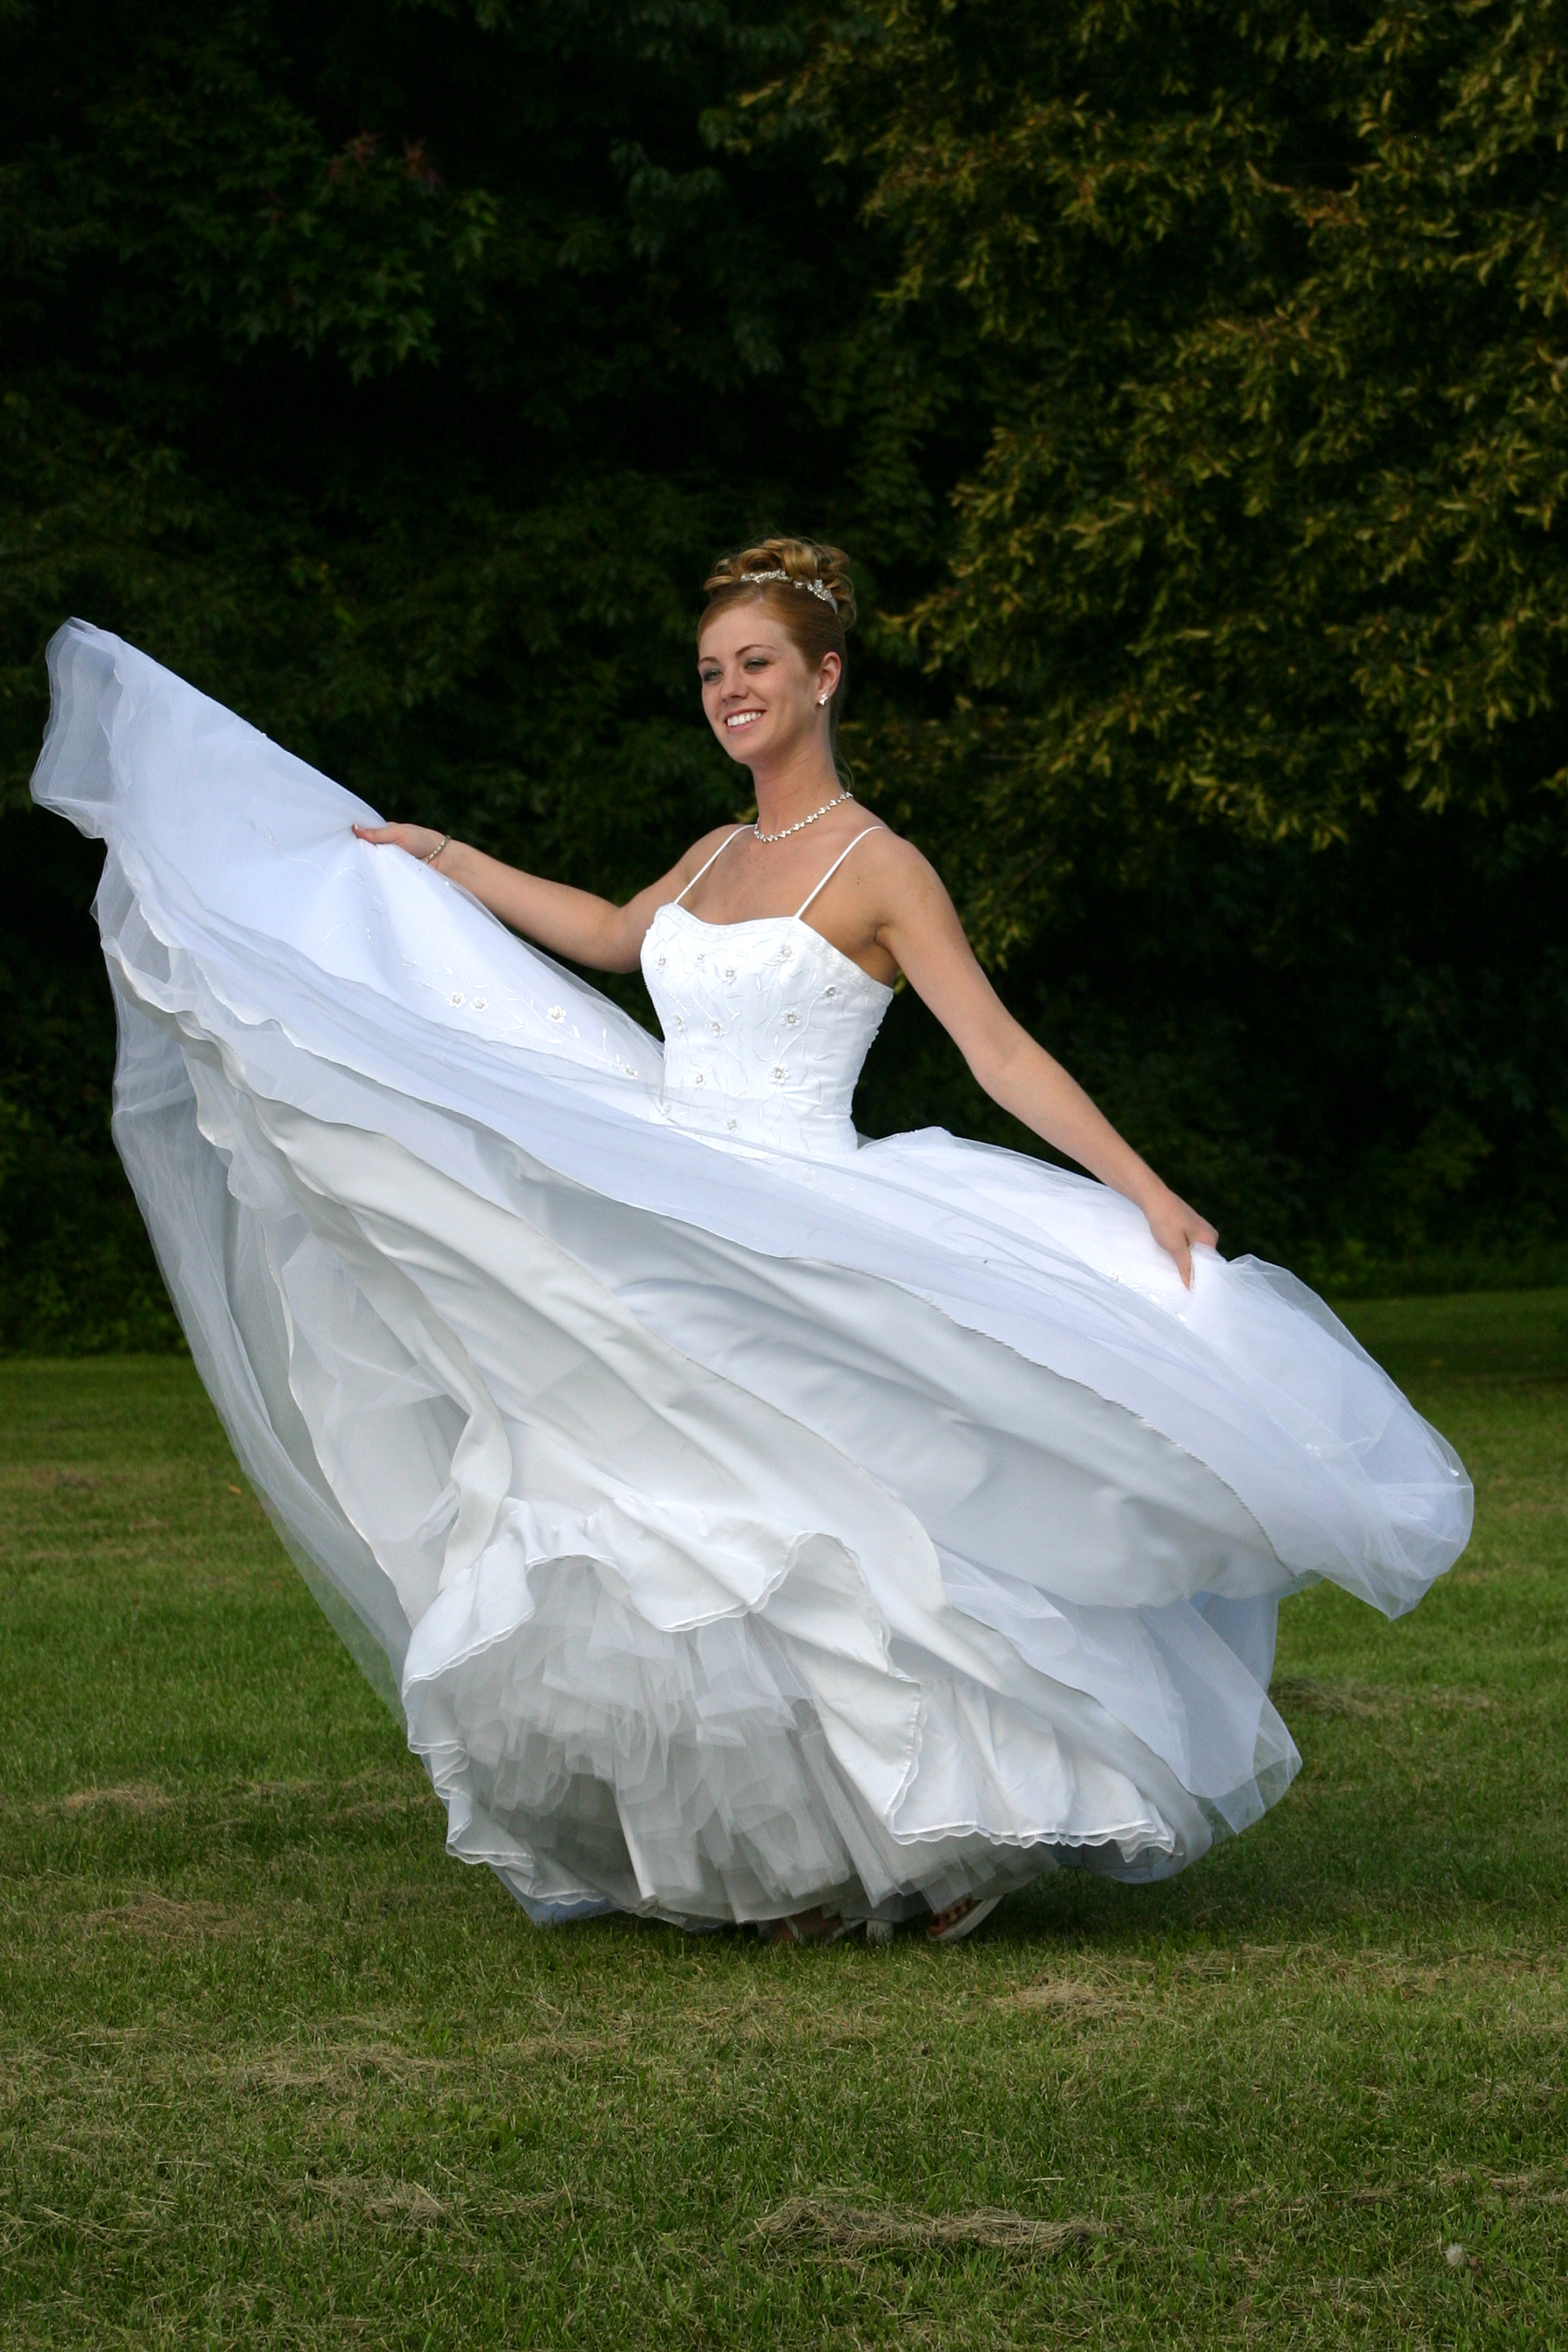 Bridal Bra Fitting Guide (Wedding Lingerie Tips) - Brava Lingerie